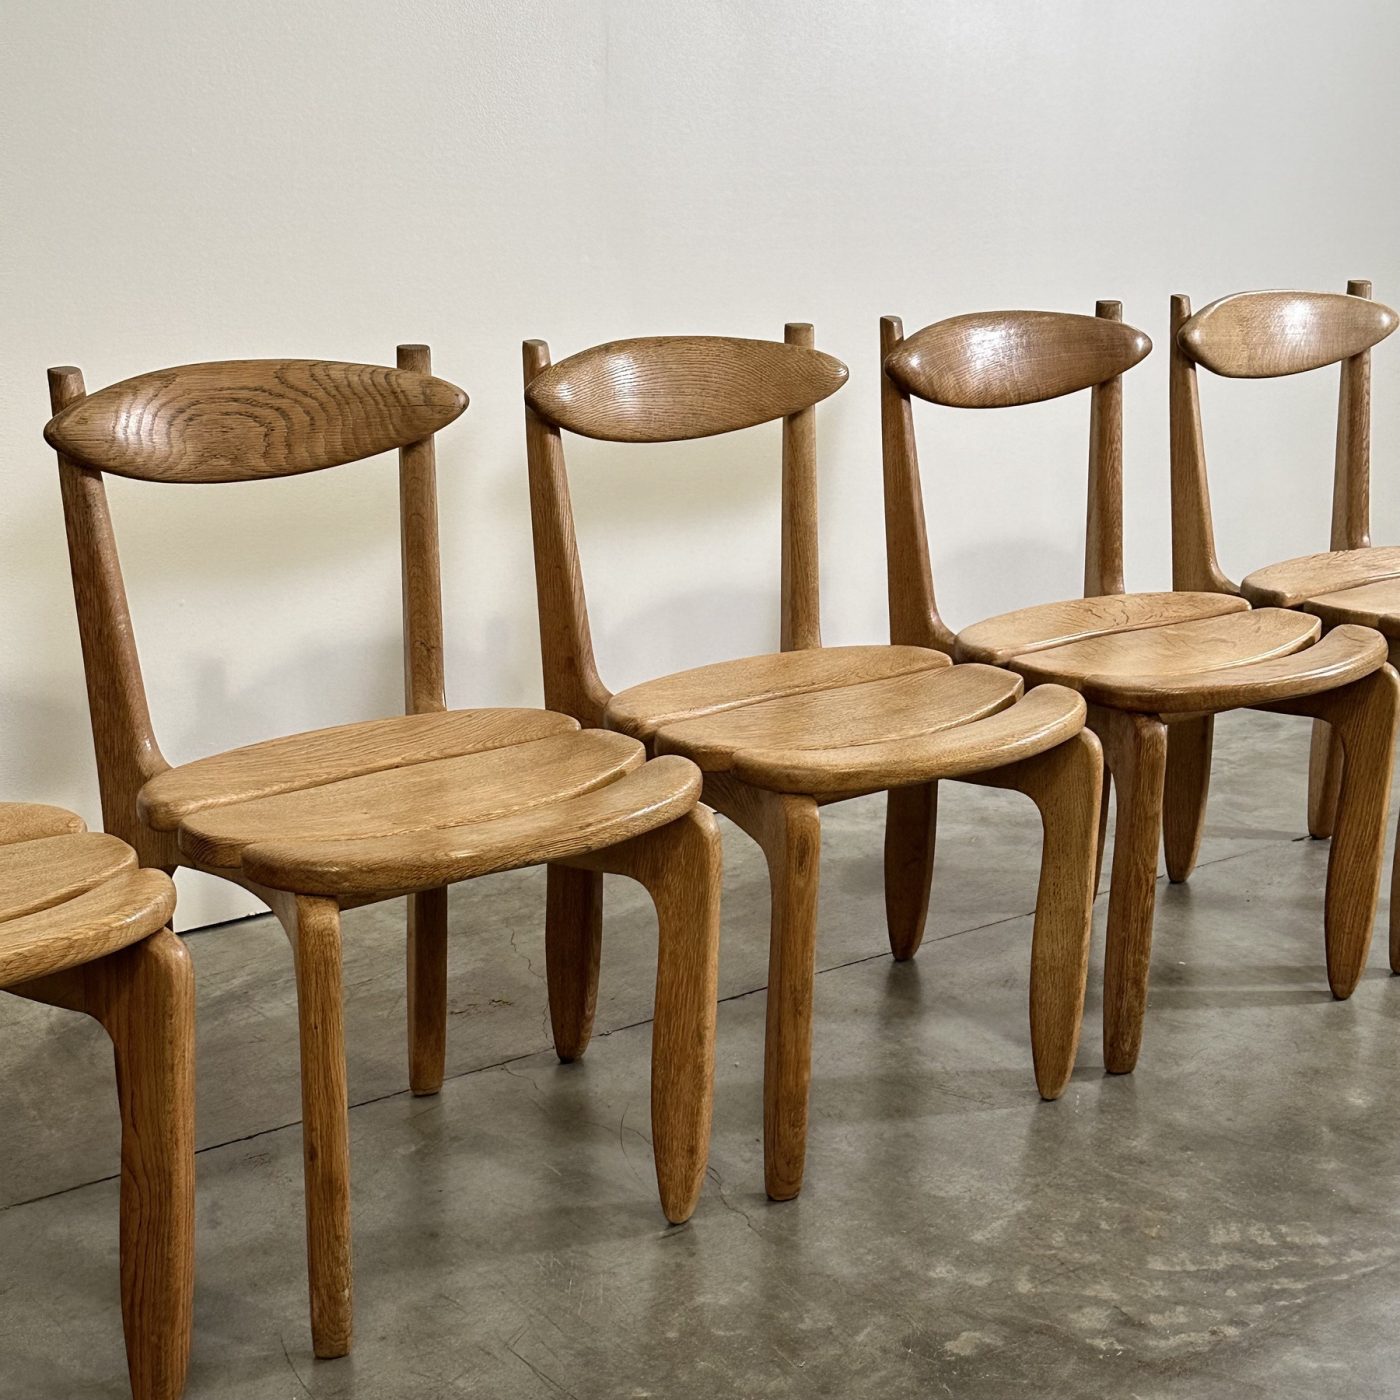 objet-vagabond-guillerme-chairs0001